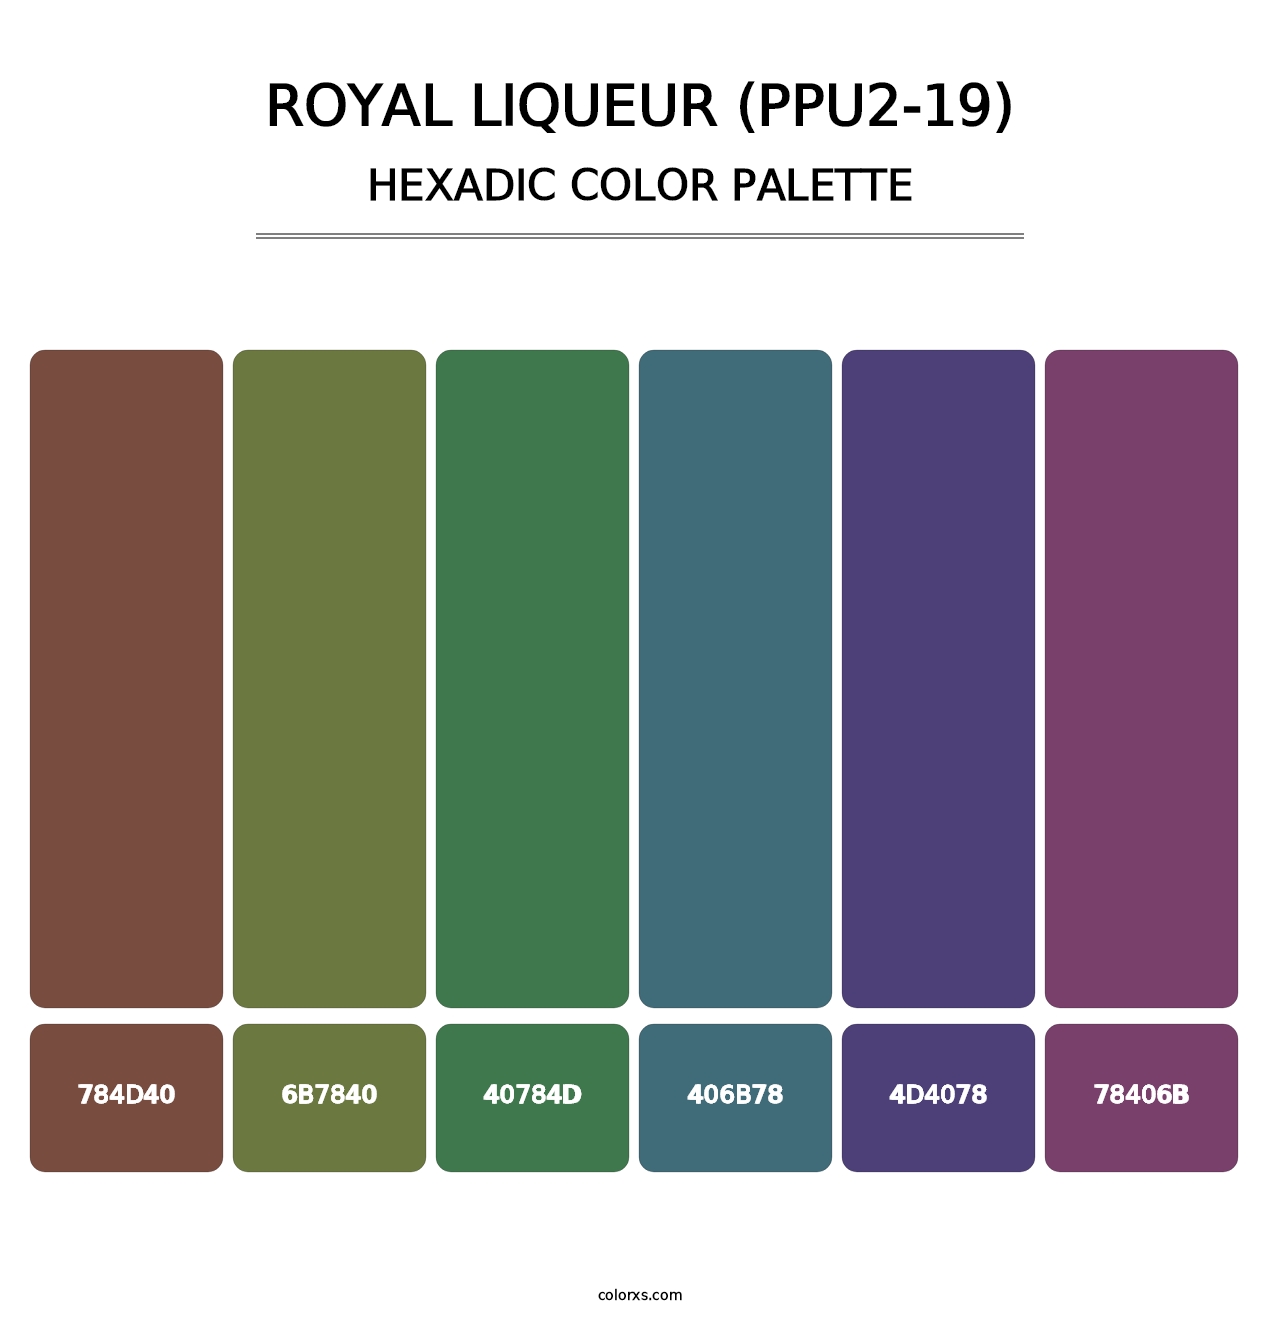 Royal Liqueur (PPU2-19) - Hexadic Color Palette